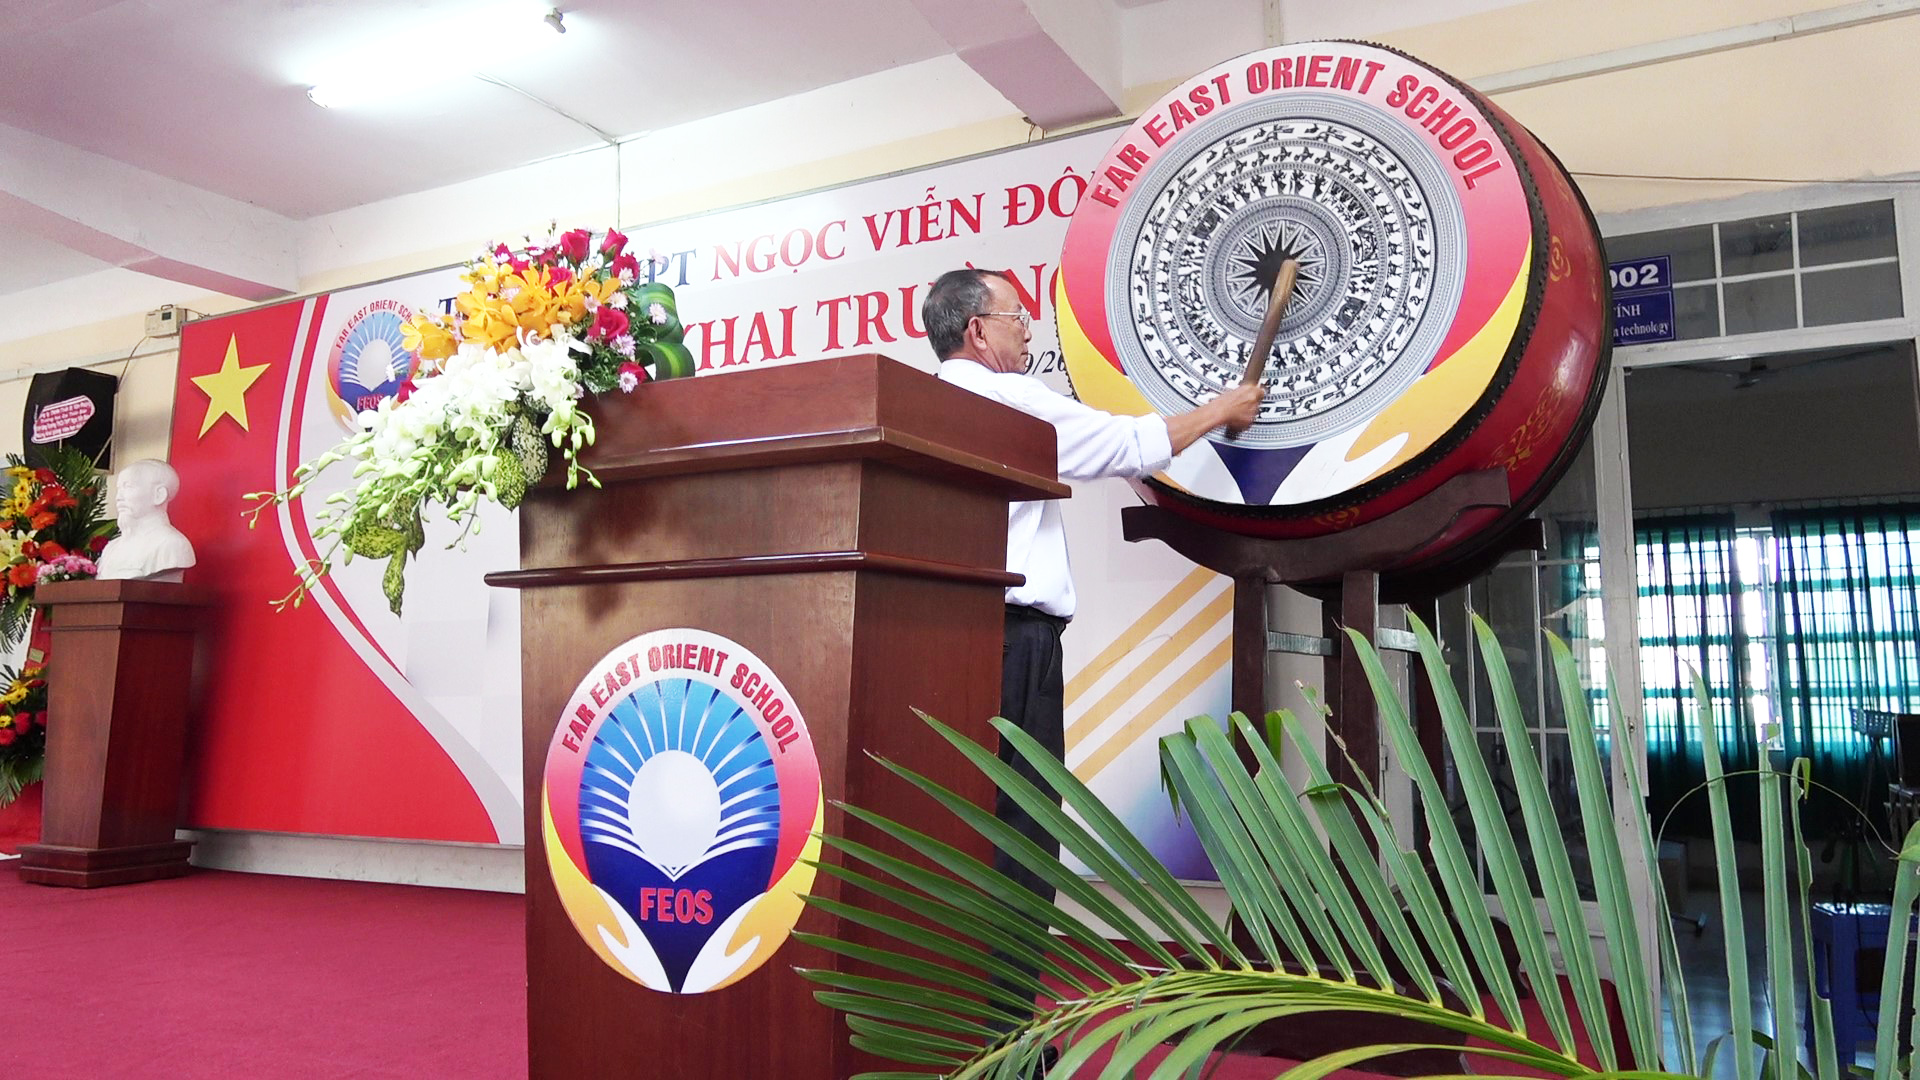 Thầy Hiệu trưởng - Võ Thanh Vân đánh hồi trống Khai trường để bắt đầu năm học mới 2019 - 2020